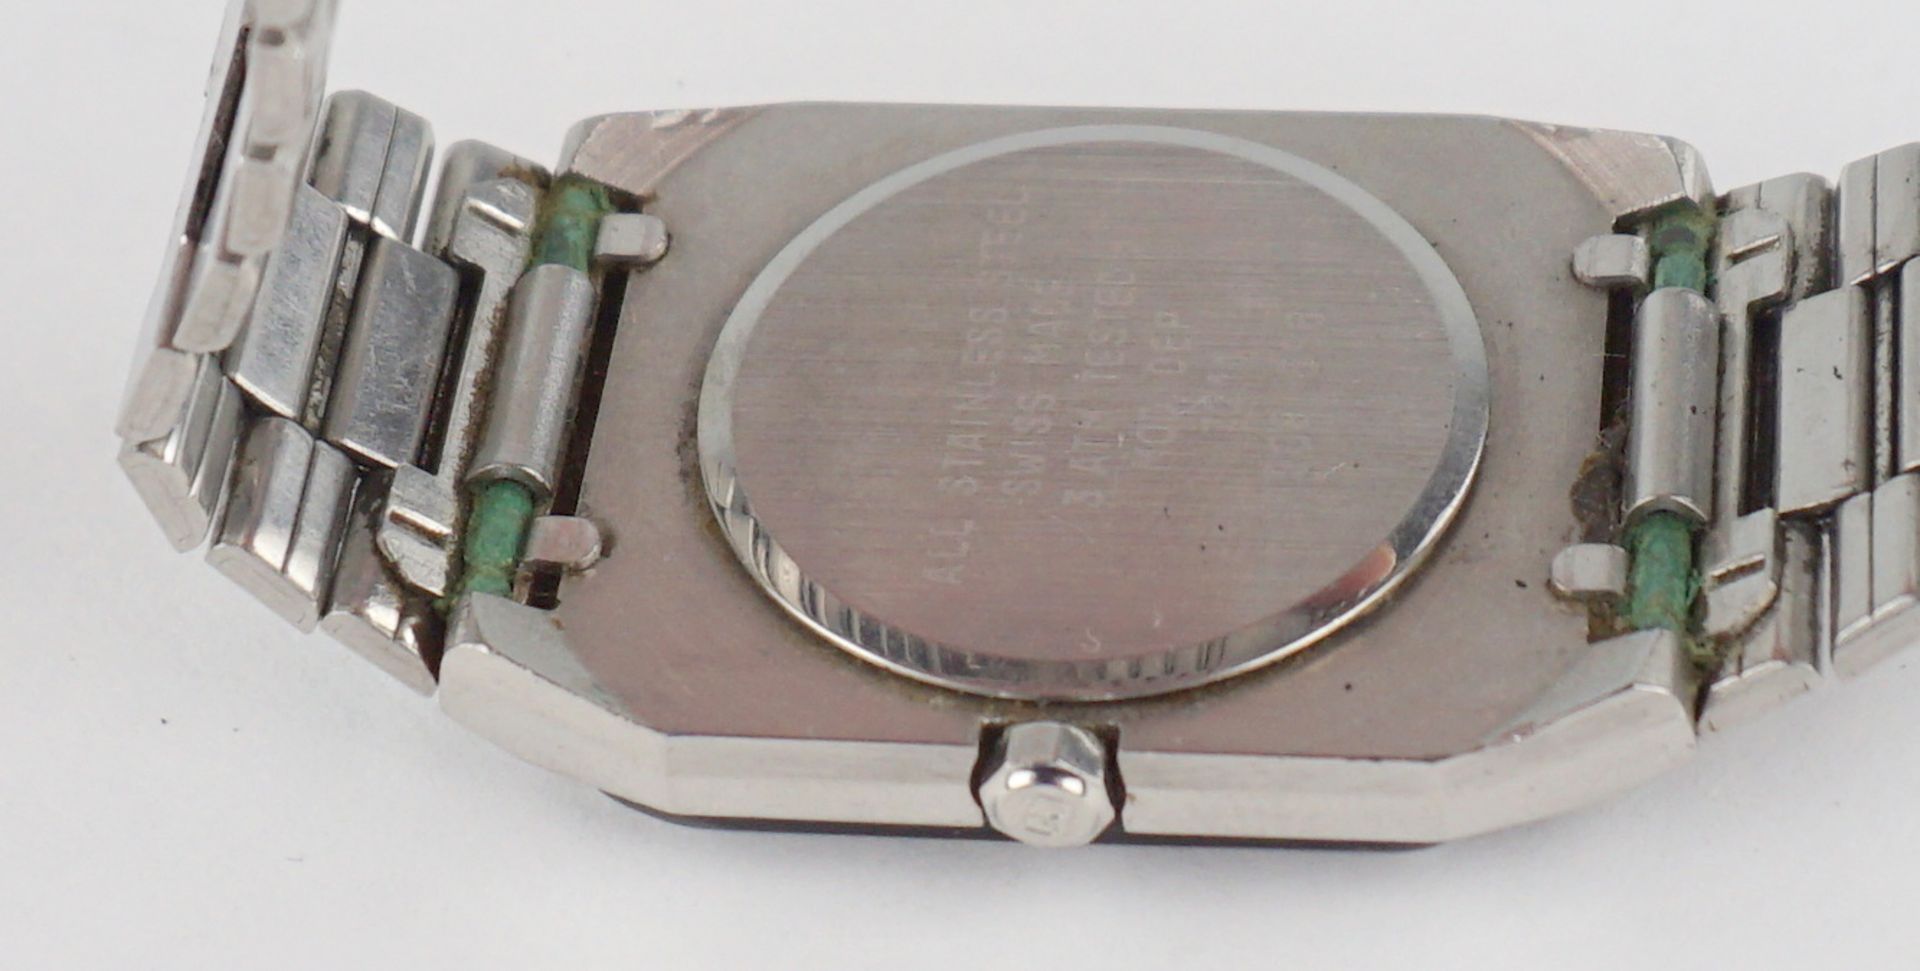 3 Armbanduhren mit Karree-Gehäuse, Quarz, Seiko und Citizen, Buler, 1980er Jahre - Image 6 of 6